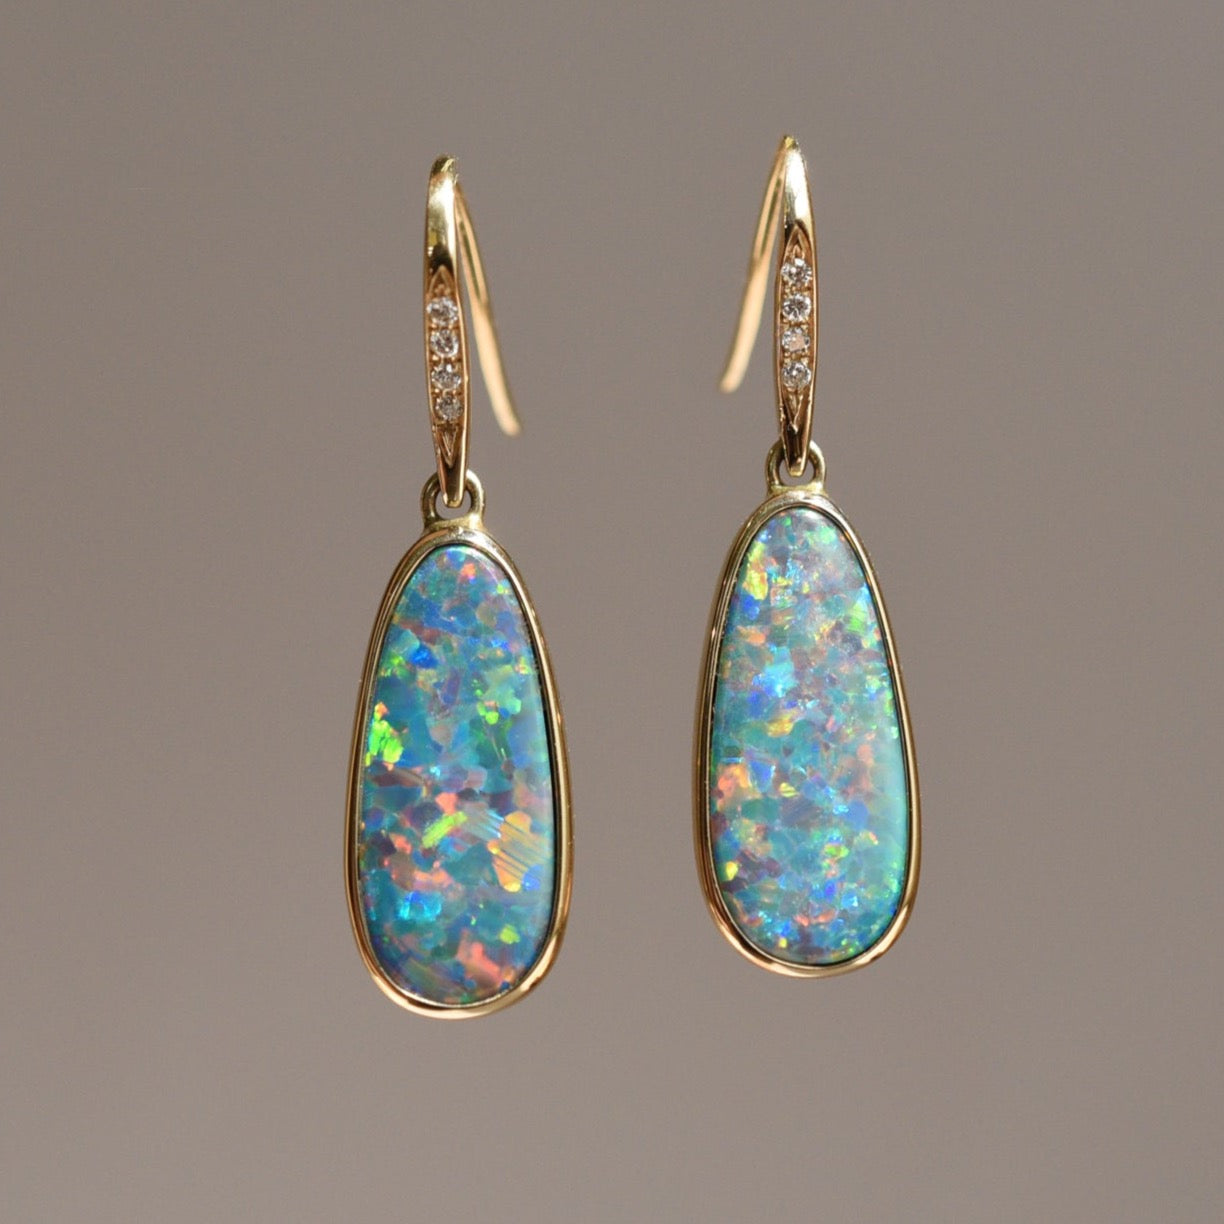 The Black Opal Earrings